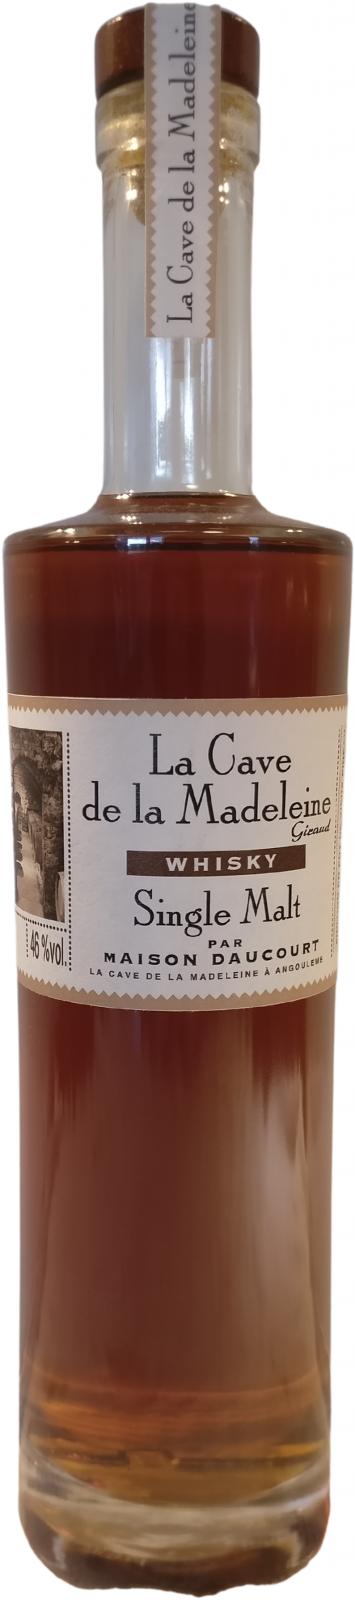 La Cave de la Madelaine Whisky